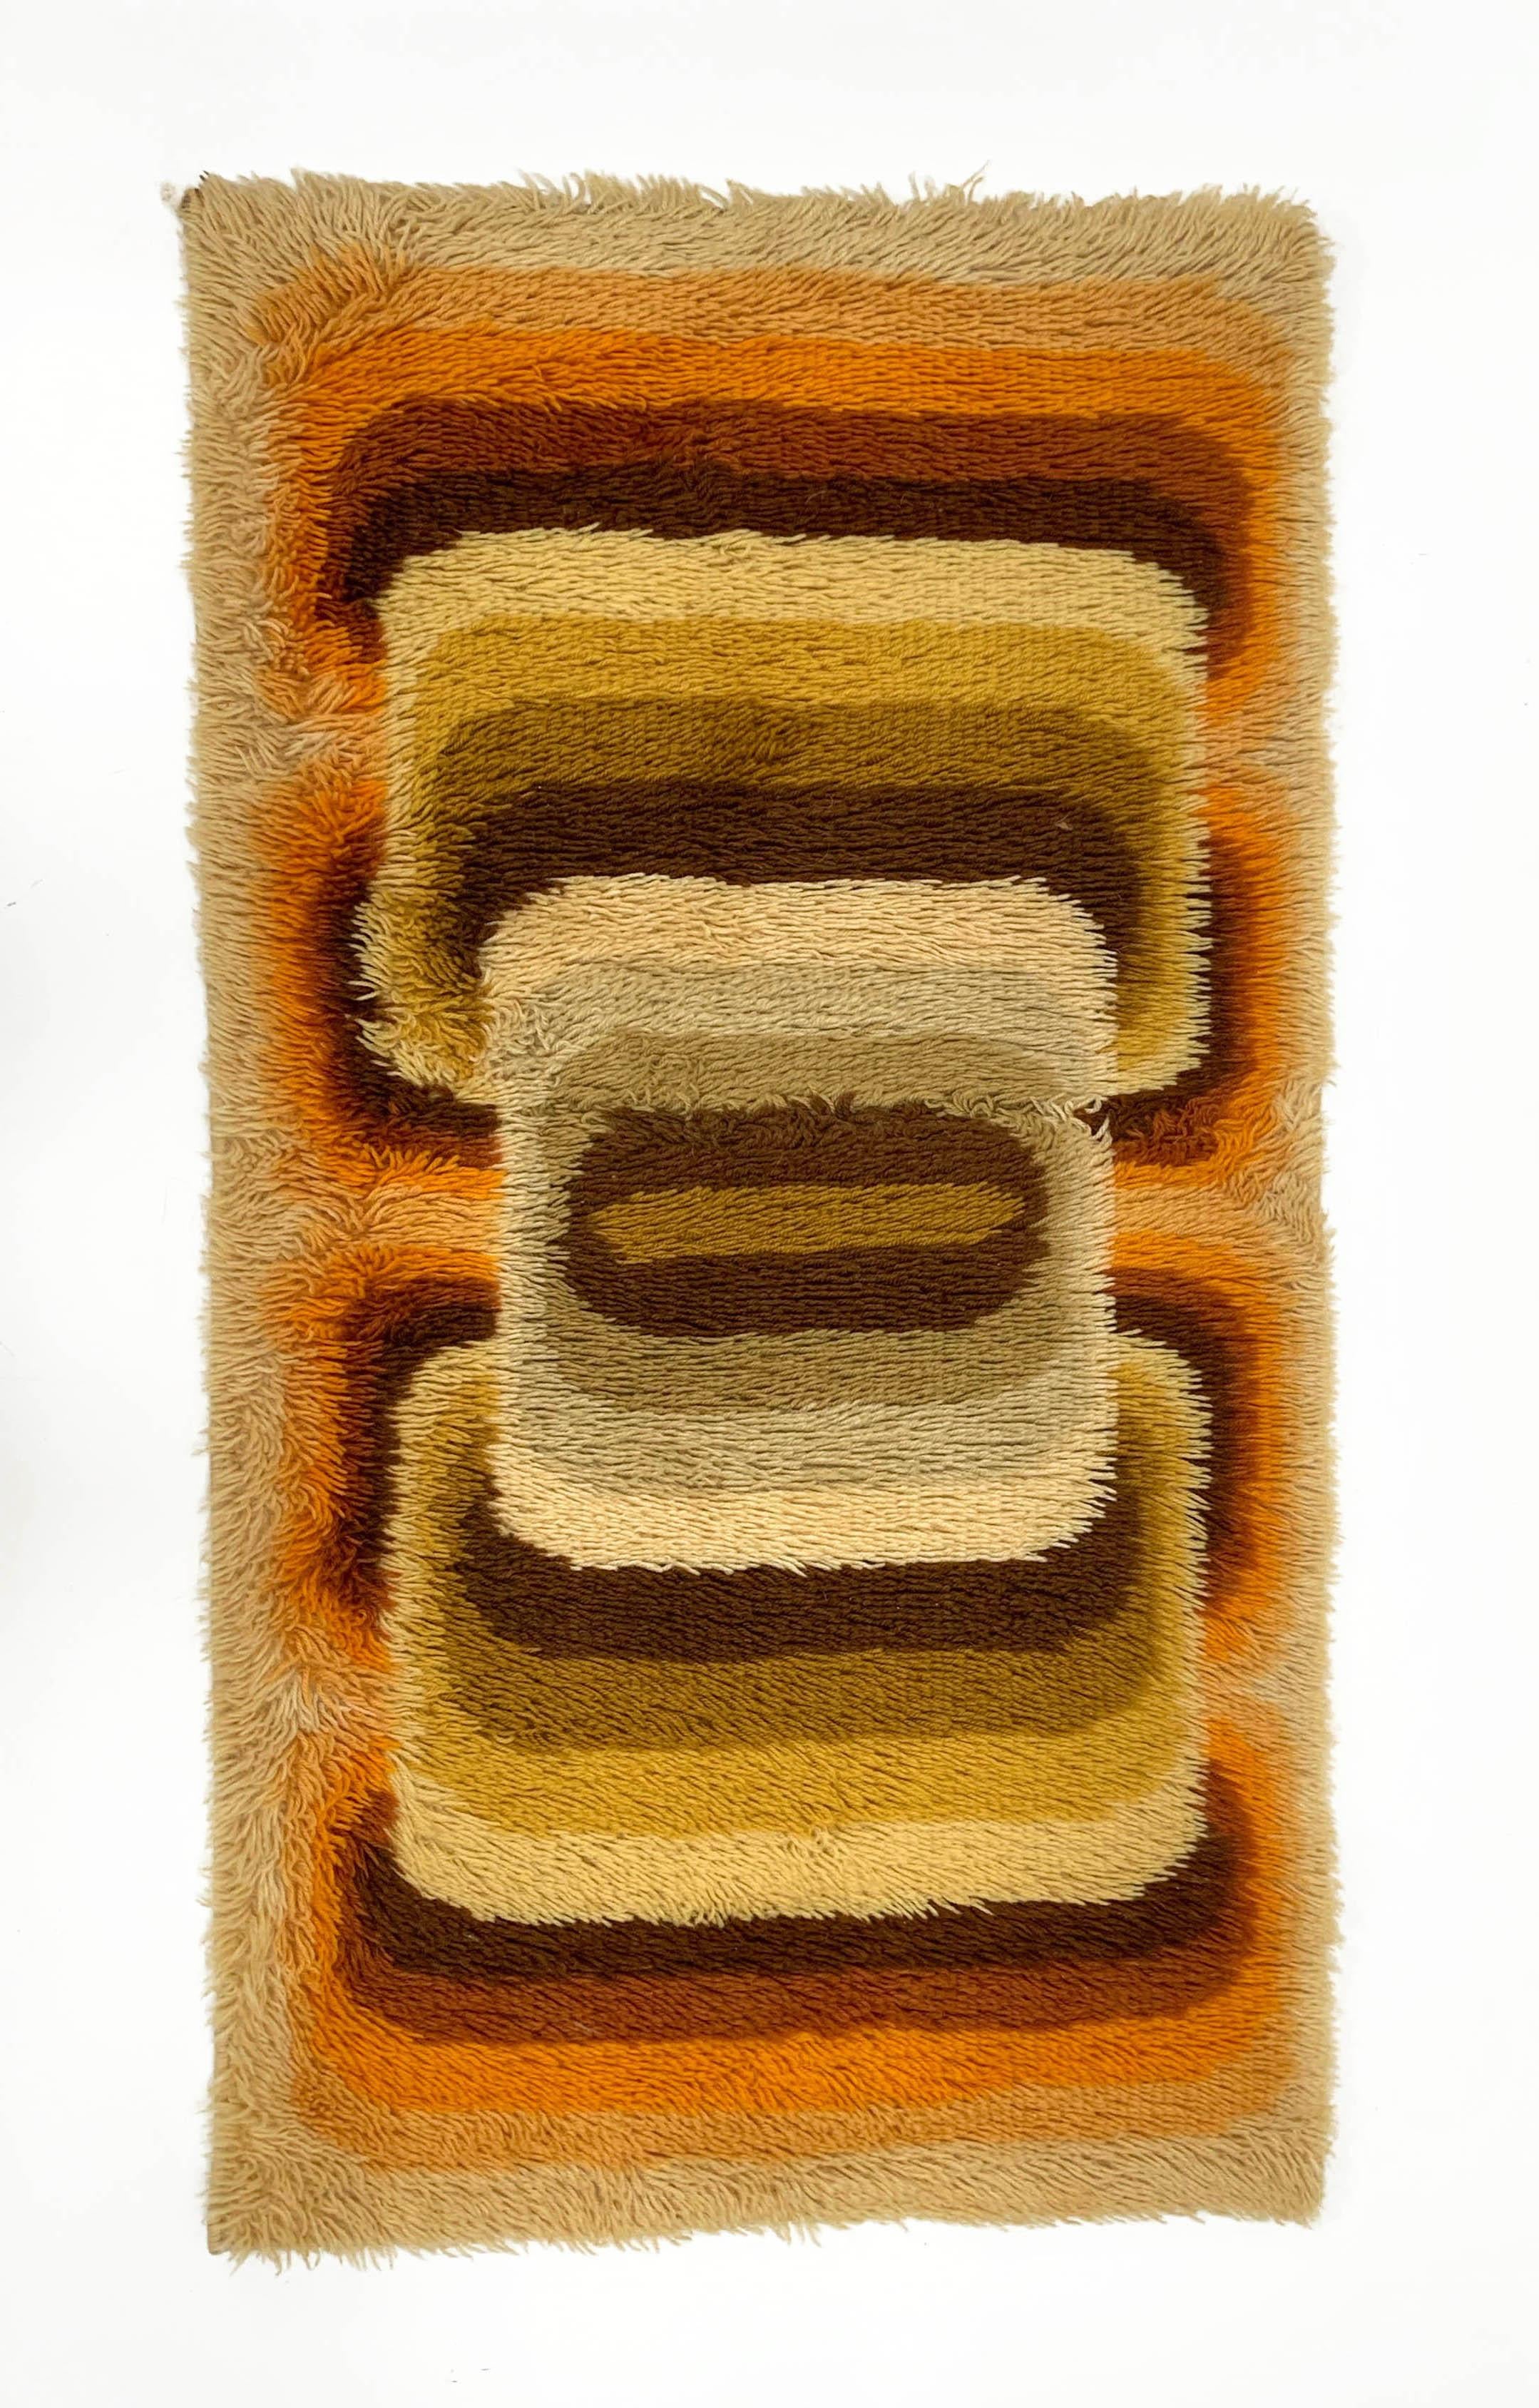 Erstaunlich Mitte des Jahrhunderts gelb, beige, braun und orange reiner Schurwollteppich. Dieser wunderschöne Teppich wurde in den 1970er Jahren von Samit Borgosesia in Italien hergestellt.

Dieser Artikel ist vollständig aus reinster